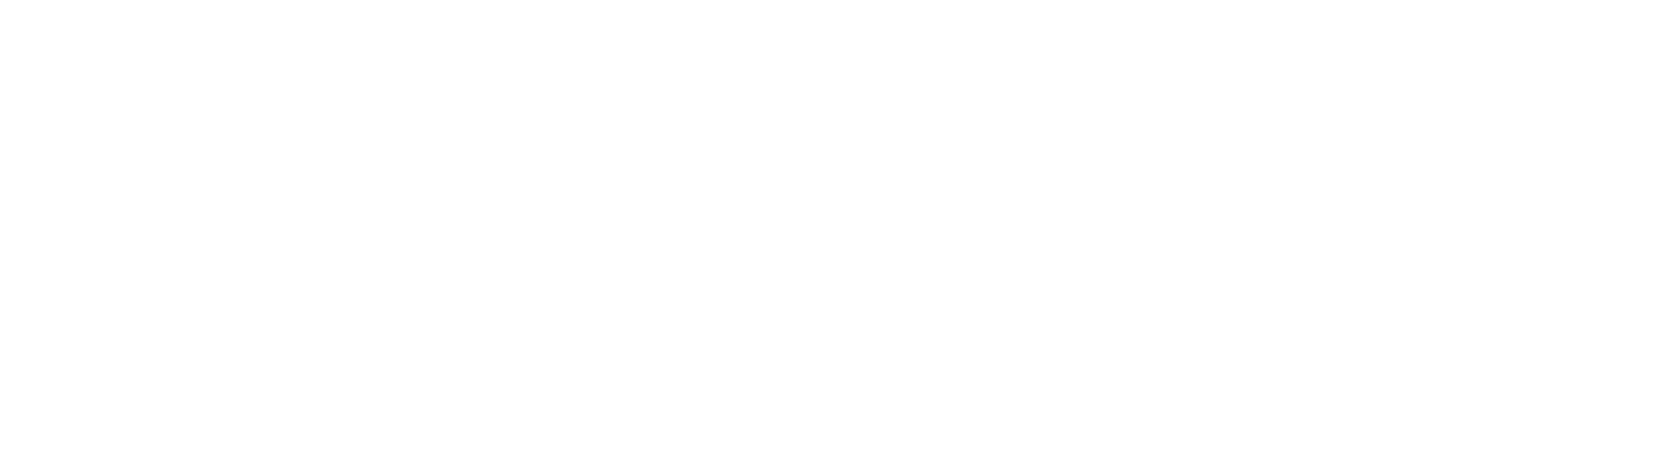 ATHLETin | agile athlete thinking management